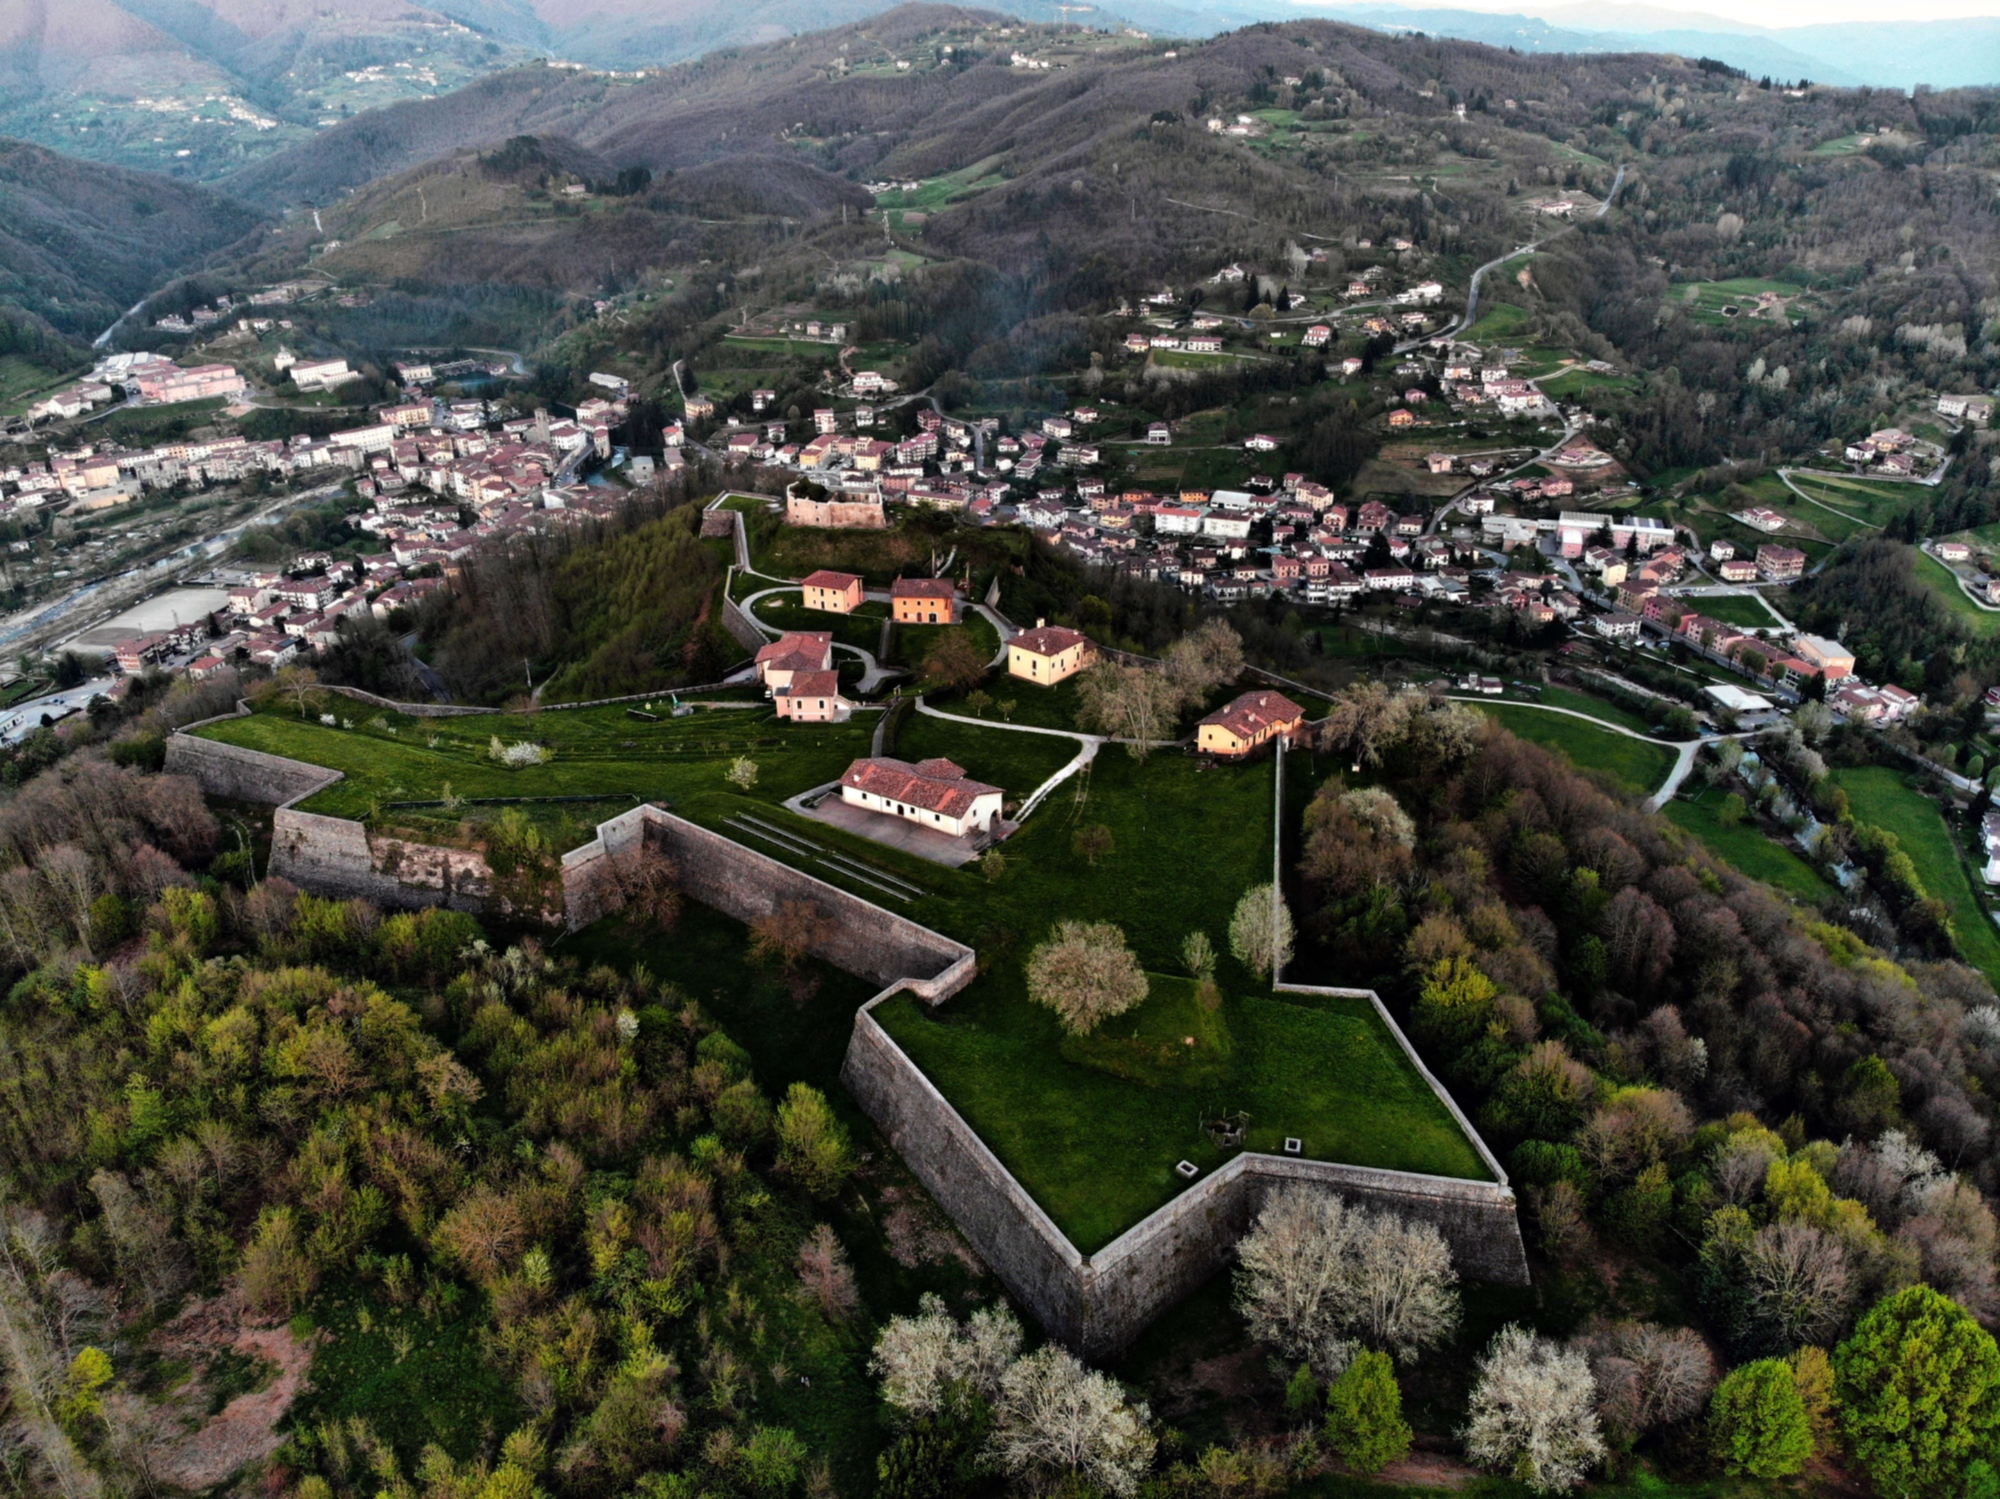 Blick auf die Festung von Mont'Alfonso von oben